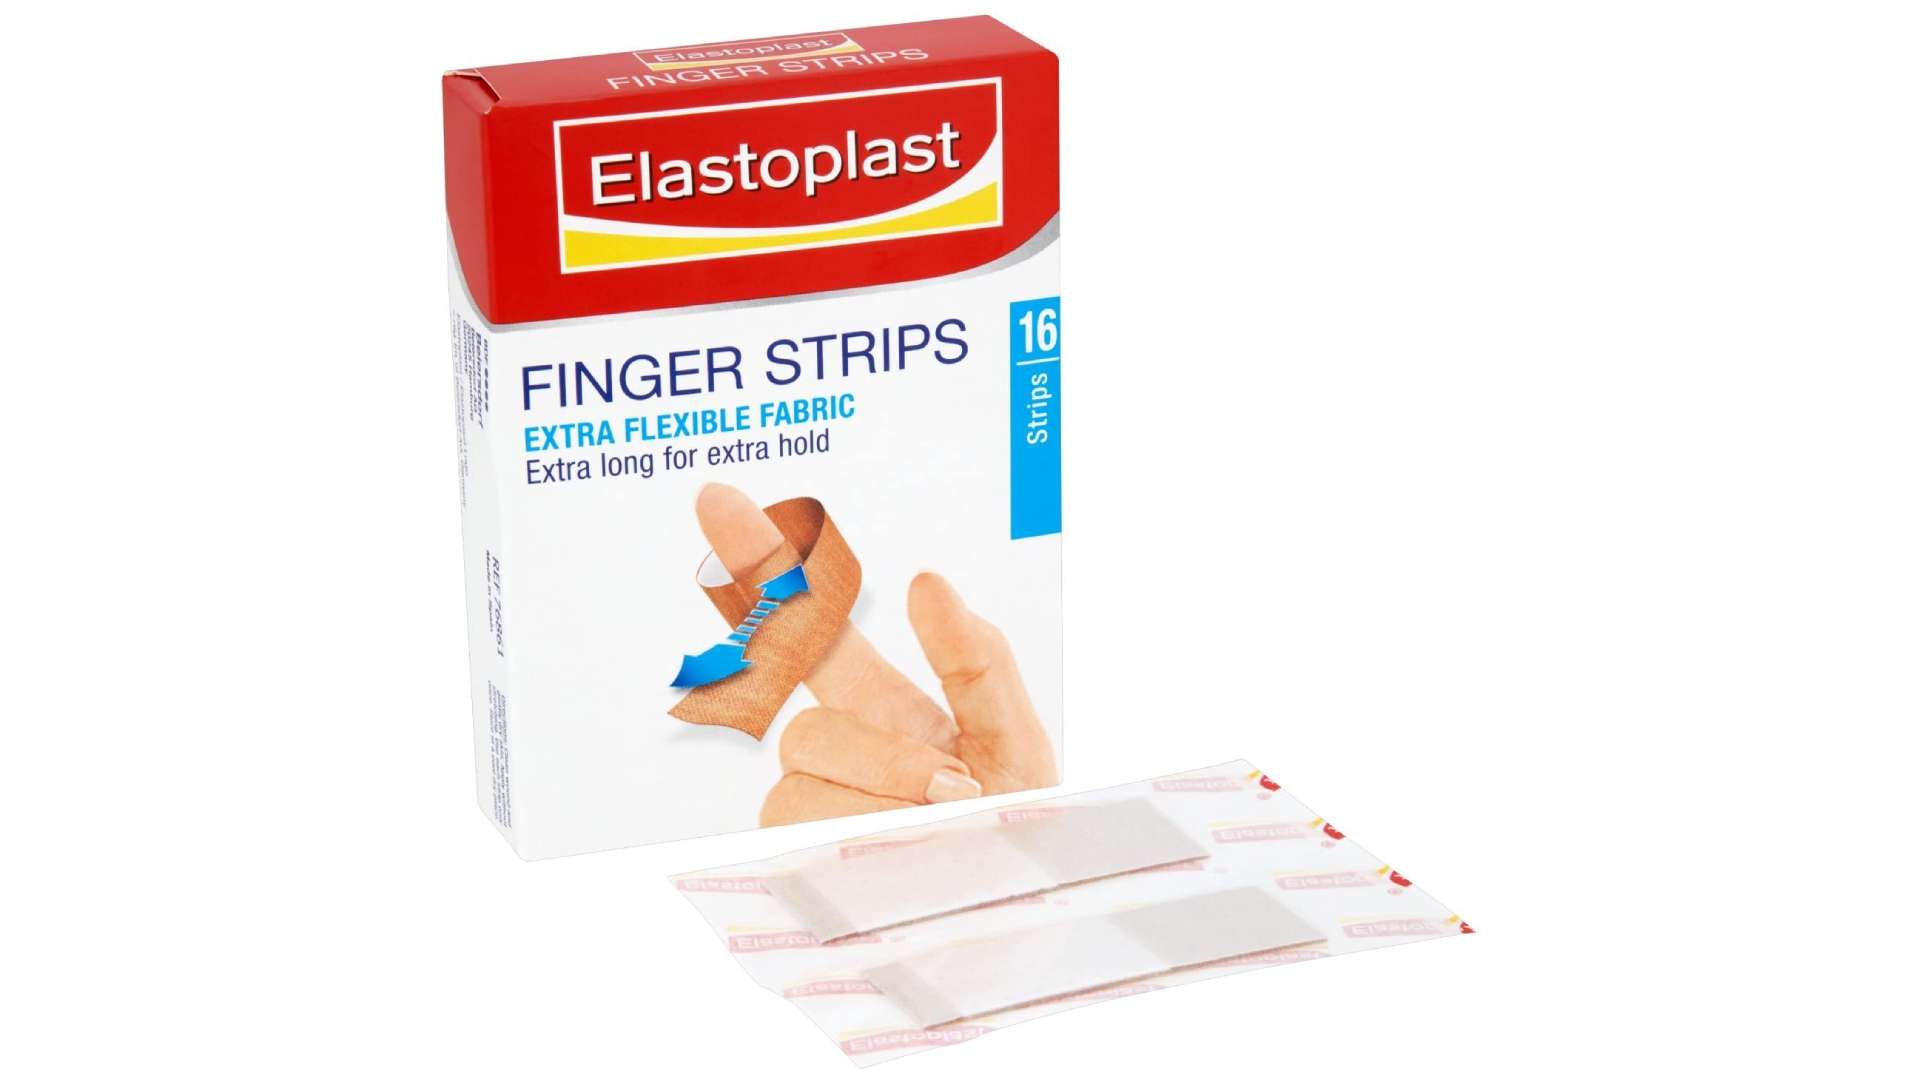 Elastoplast Finger Strip Plasters